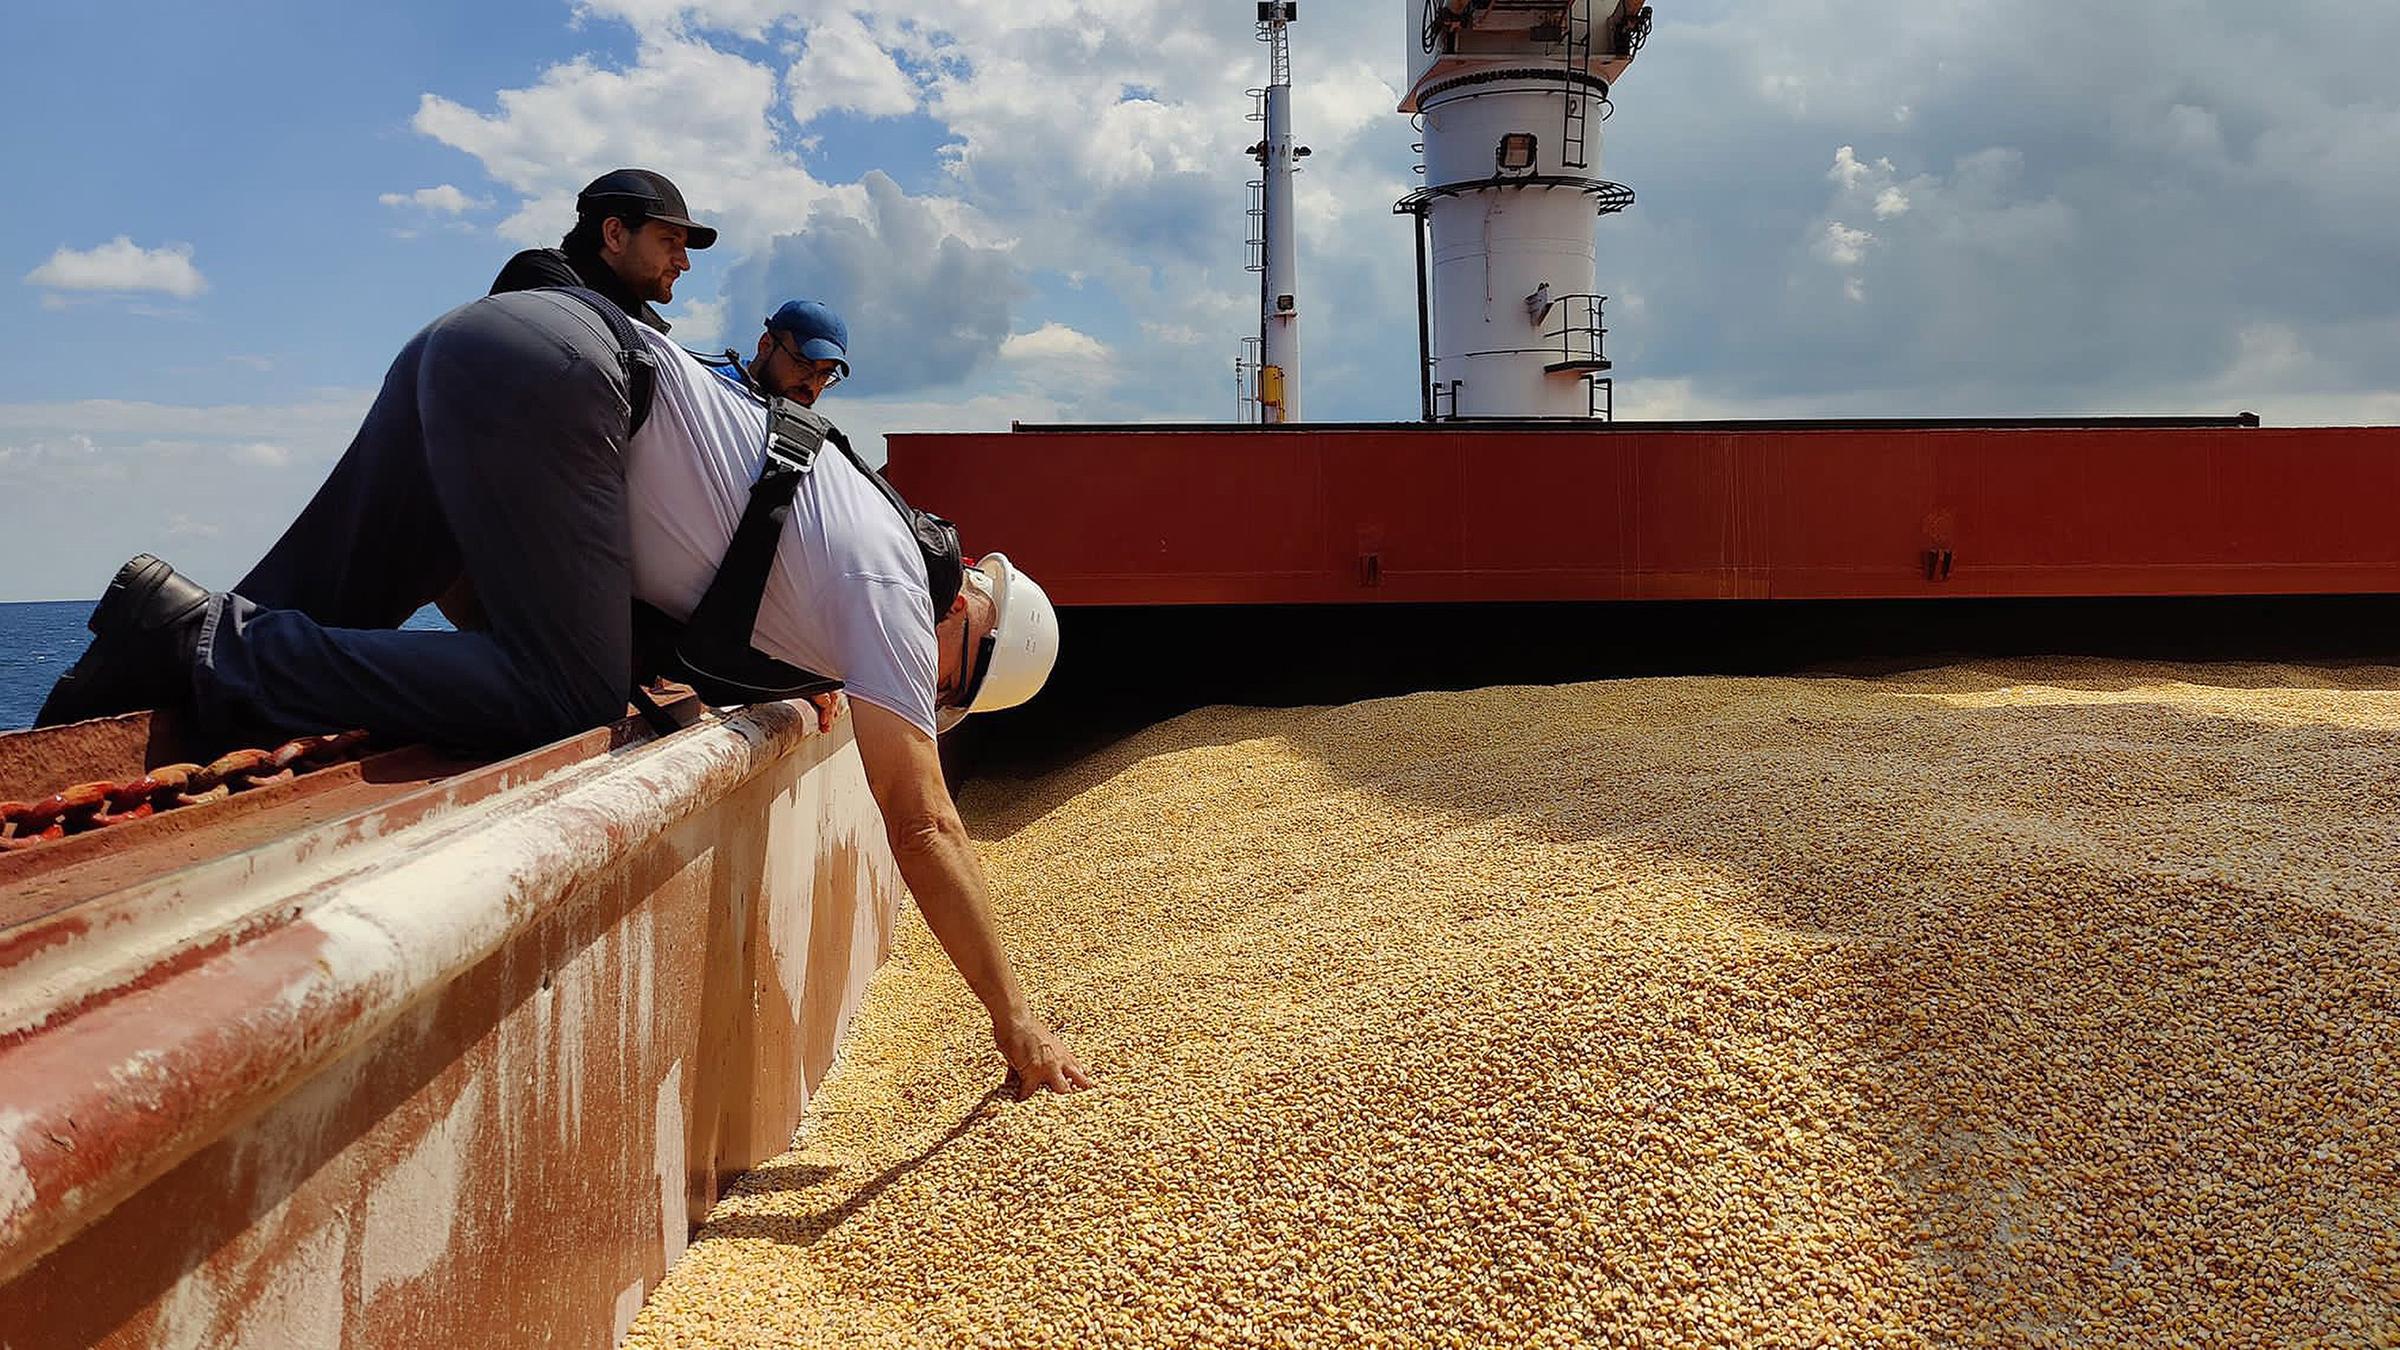 Getreide-Frachter "Razoni":  Inspektion nach kurzer Zeit bereits abgeschlossen